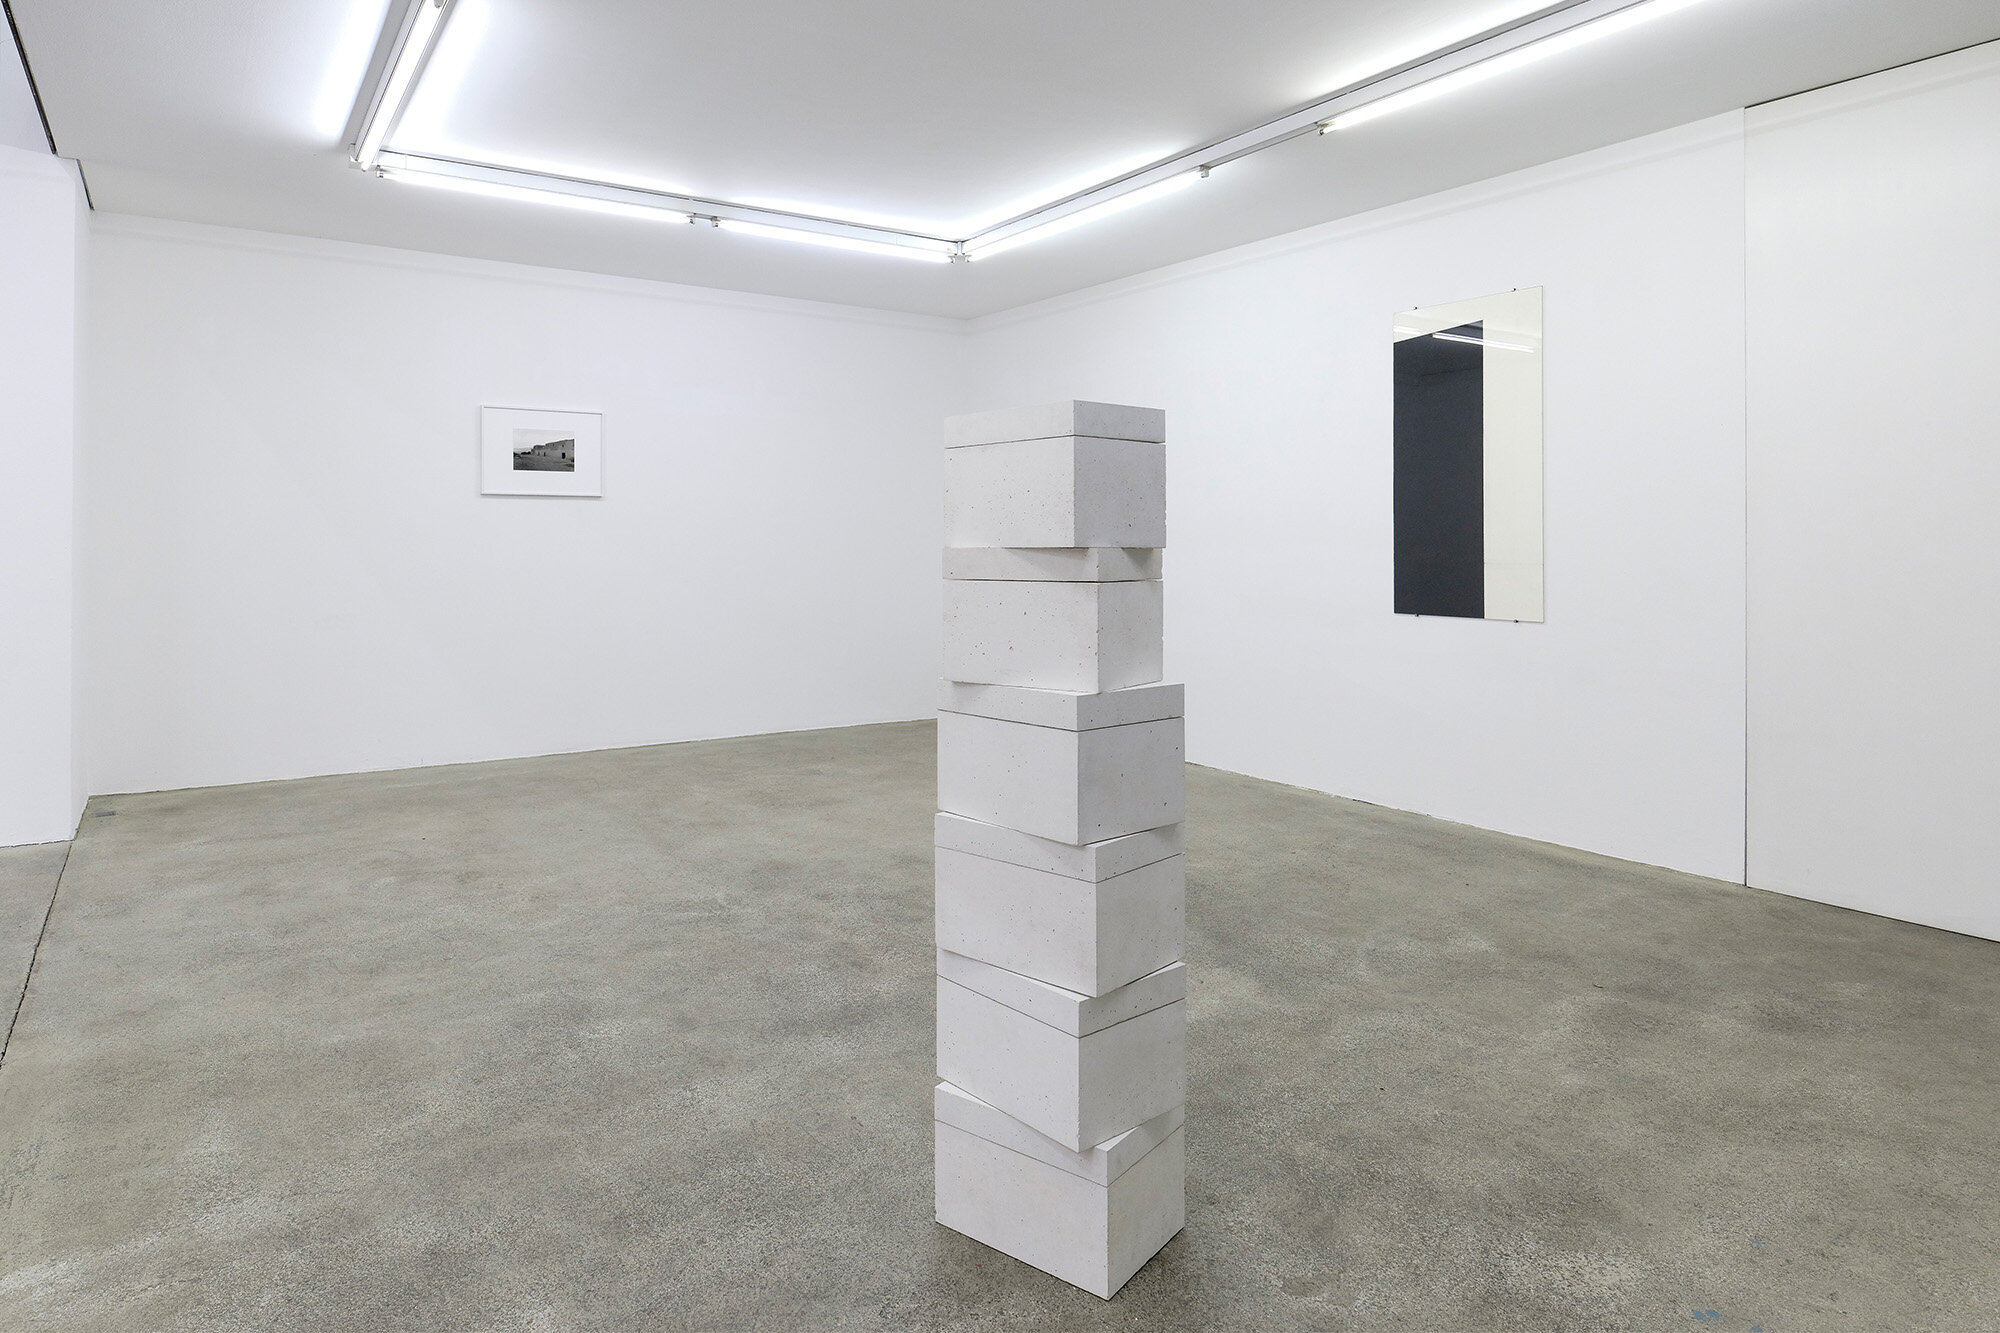 Galerie+Johann+Widauer-Exhibition-2020-Hubert-Kiecol-04.jpg